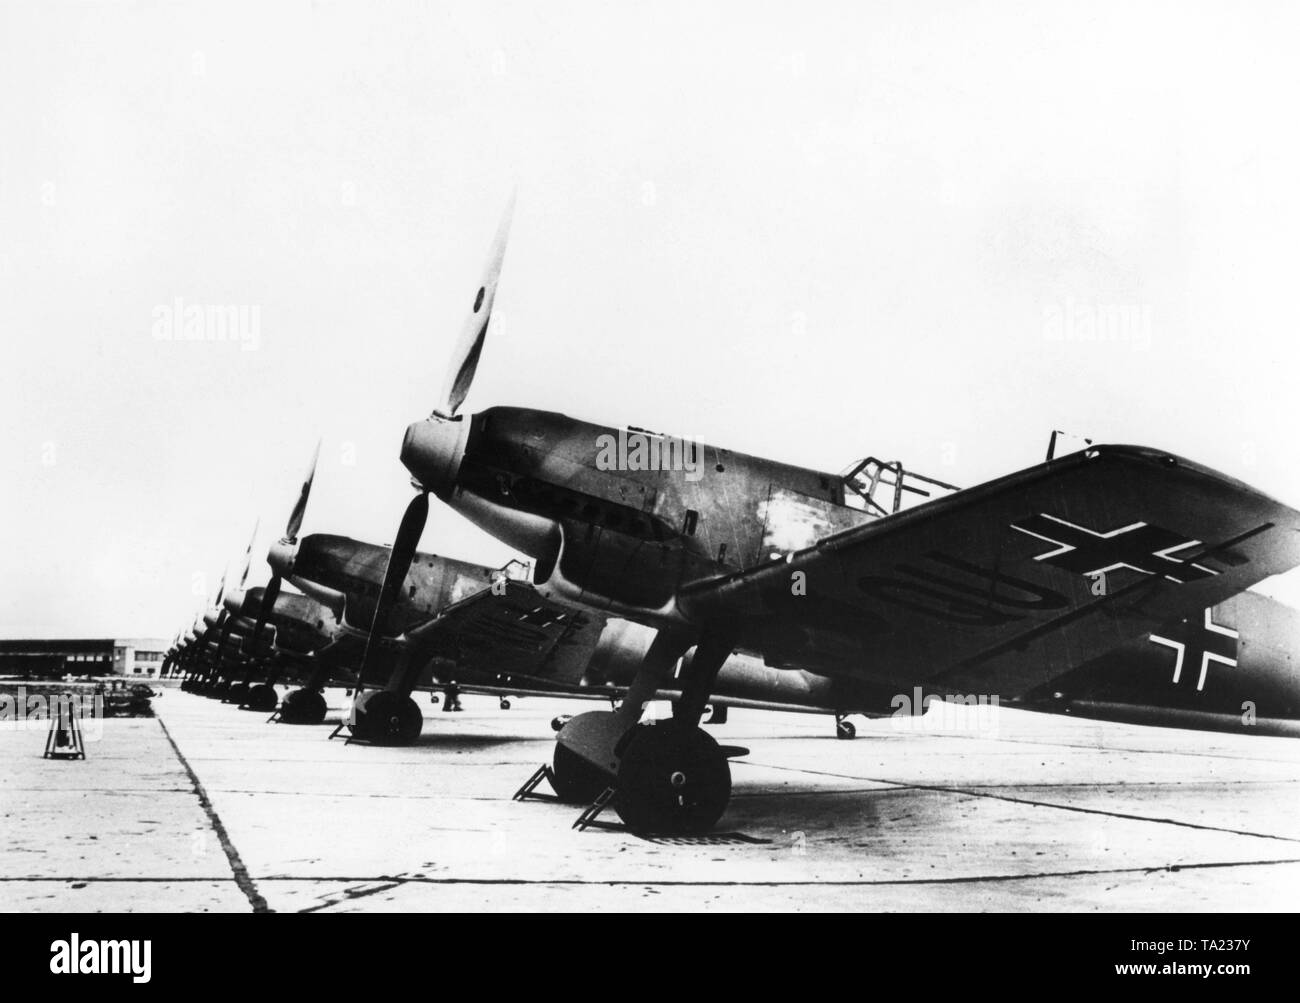 La photo montre le type de chasseurs Messerschmitt Bf 109, qui sont stationnés à l'extérieur de l'usine et les salles doivent être livrés aux pilotes. Avec environ 33 300 machines, le 109 est l'avion de chasse les plus populaires dans l'histoire. Banque D'Images